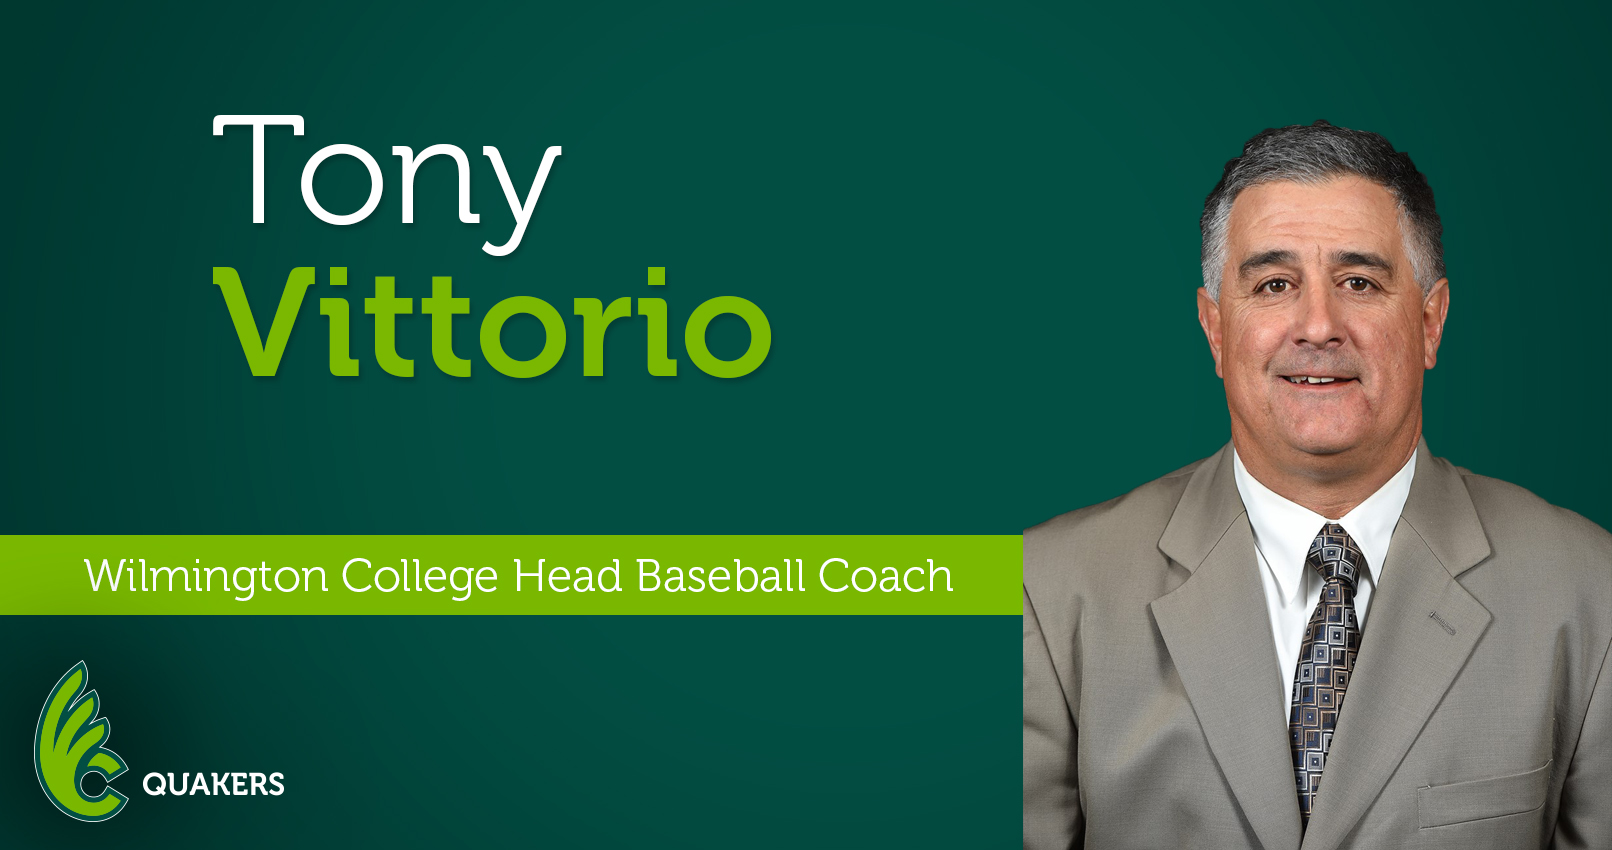 Tony Vittorio Named Head Baseball Coach